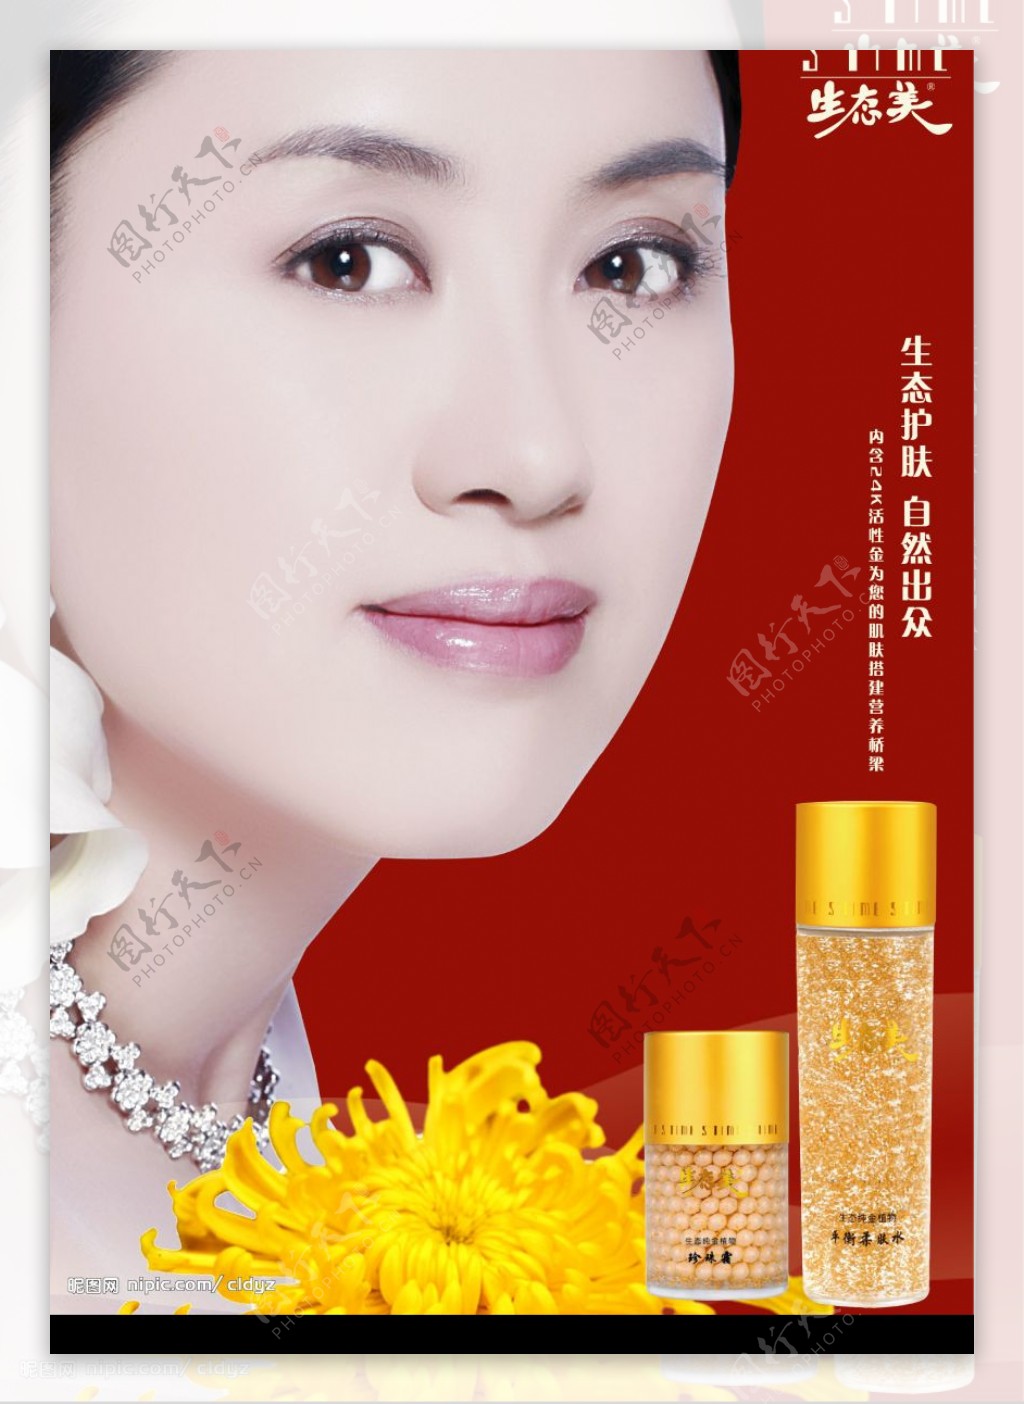 生态美化妆品广告菊花化妆品分层人物与背景一层图片